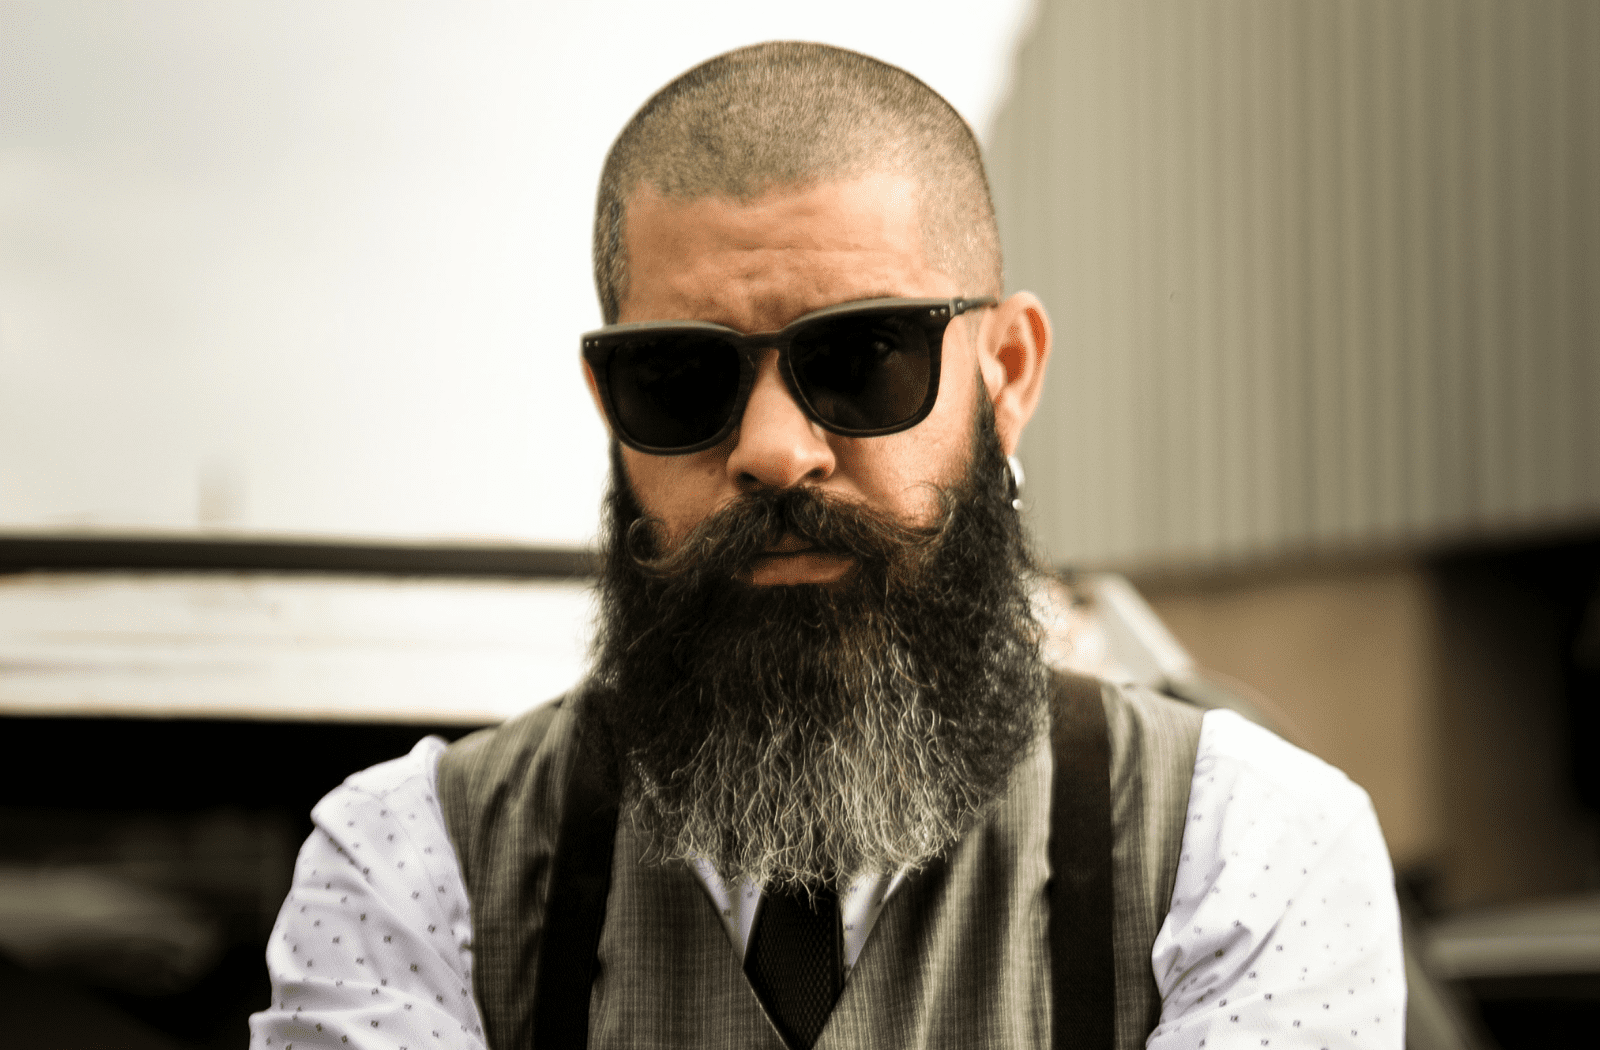 beard style 2022